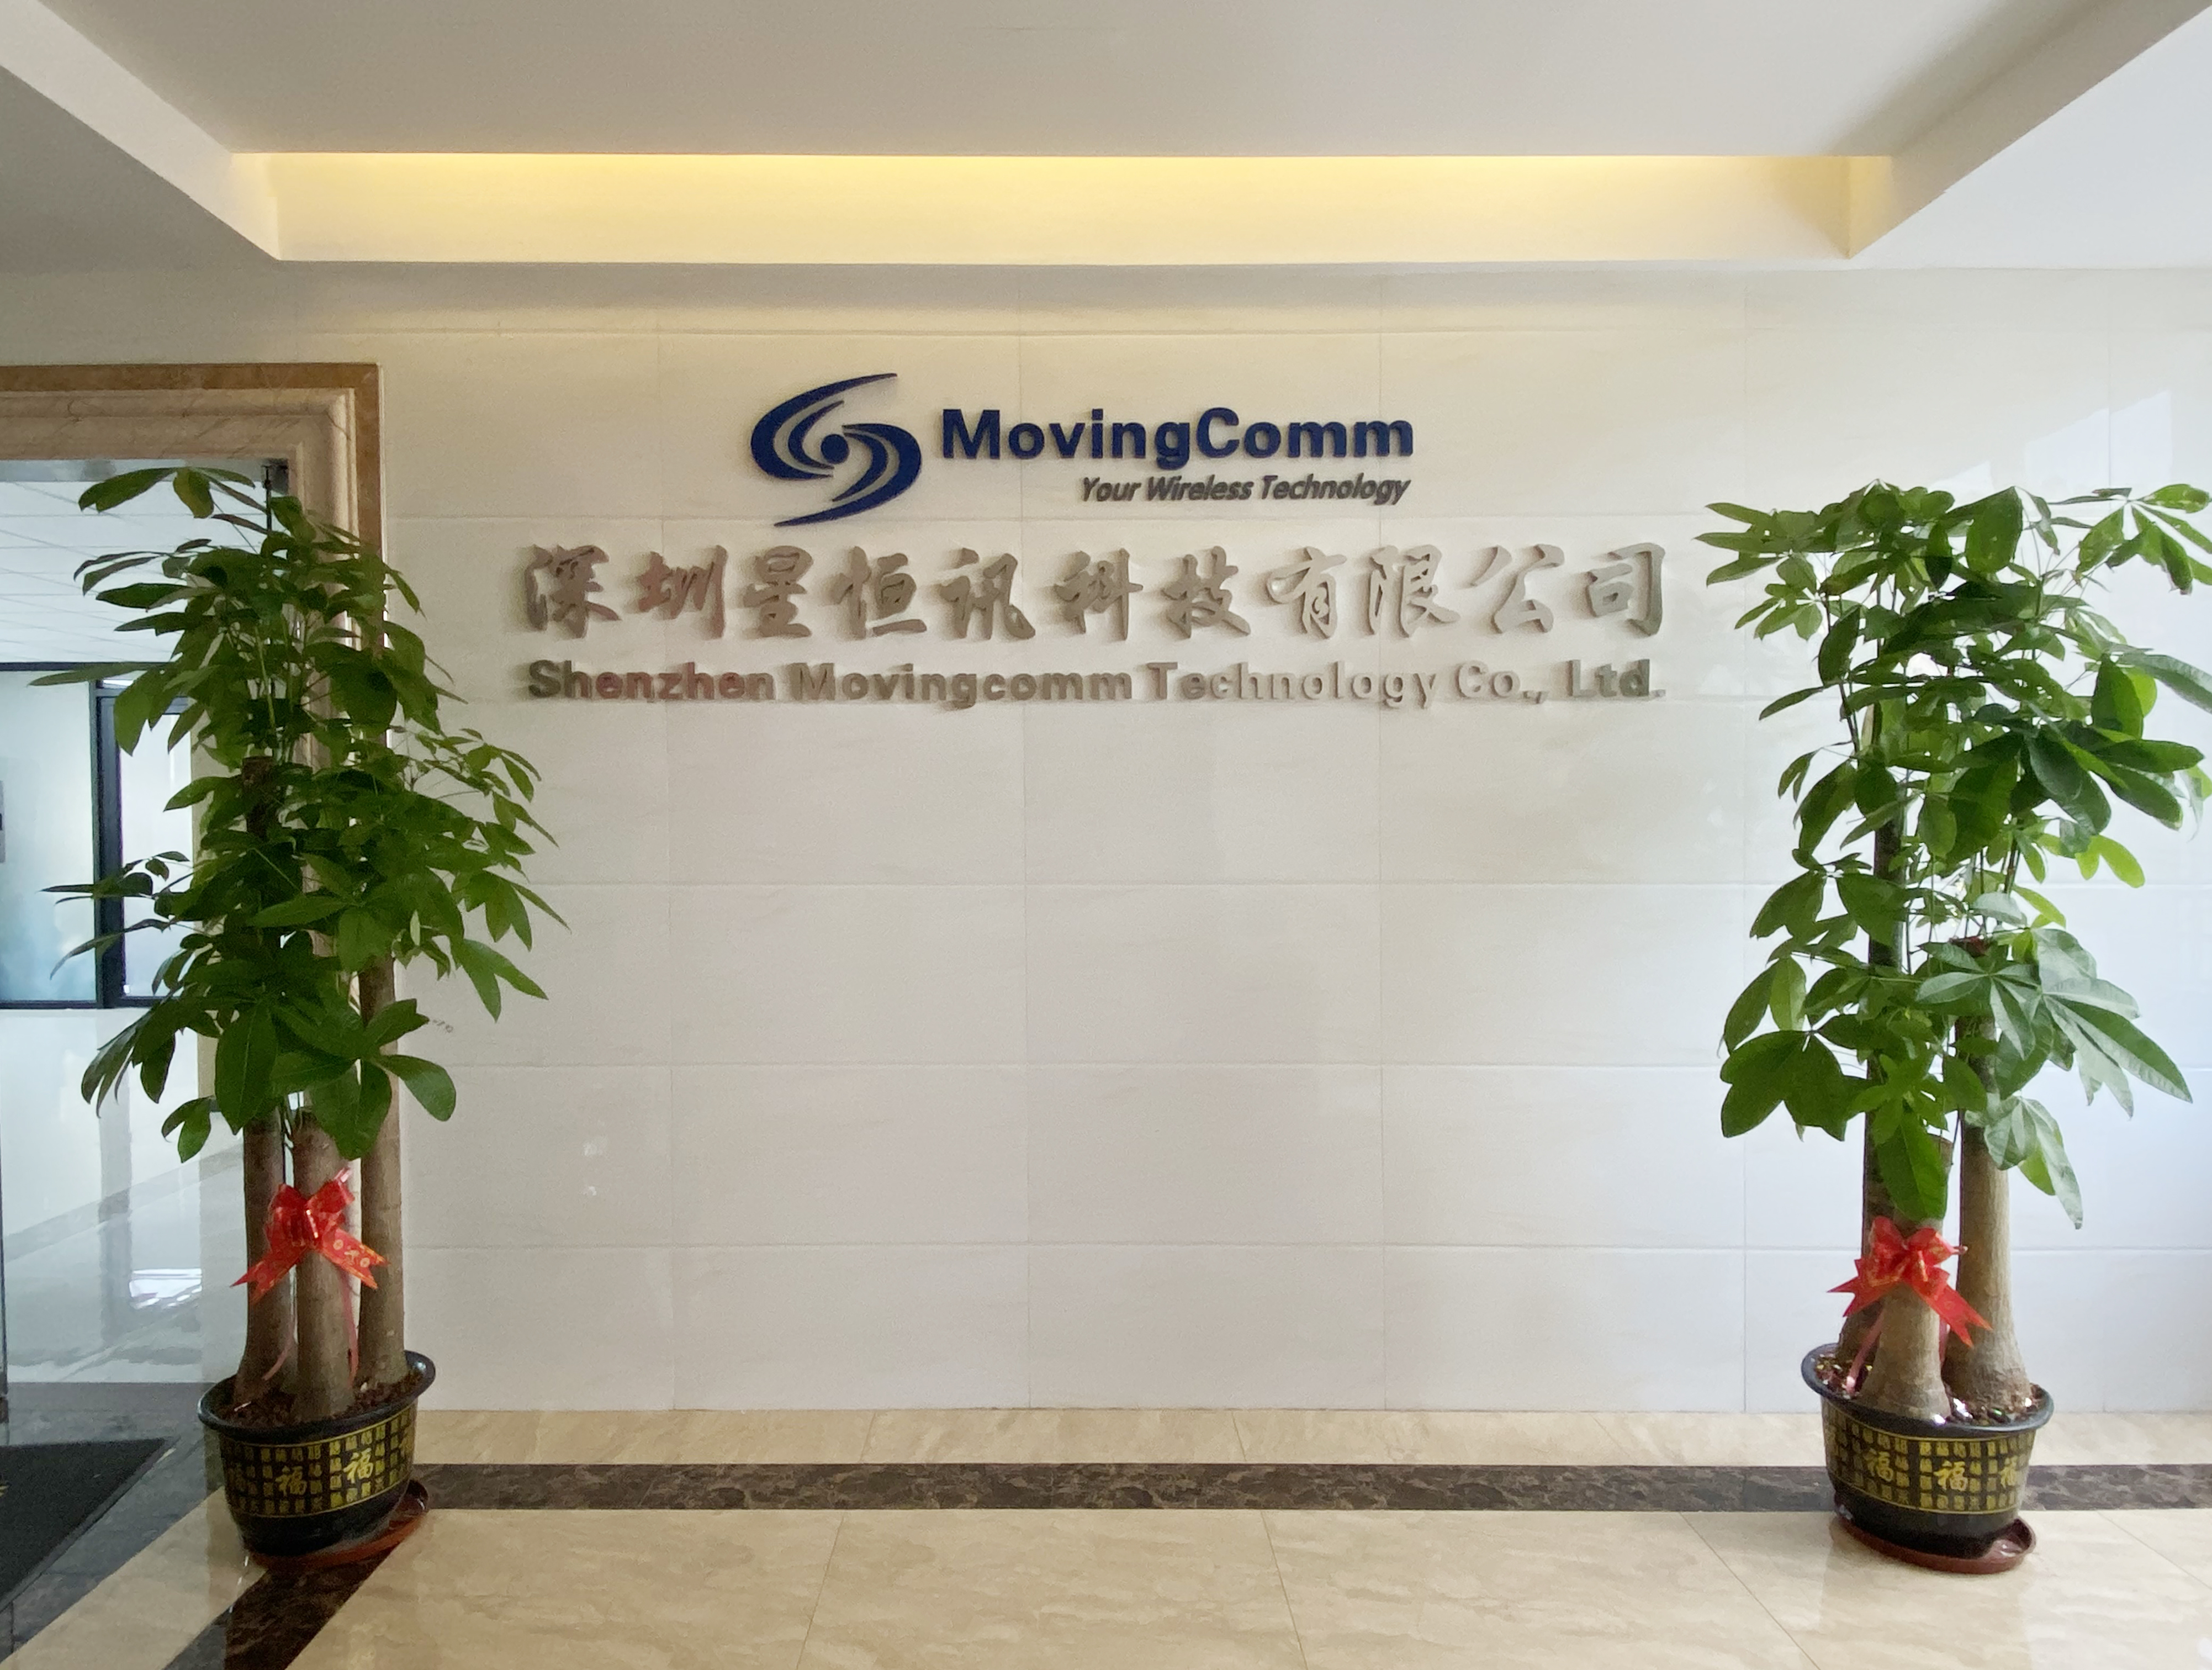 Exibição de oficina do fabricante do roteador Shenzhen